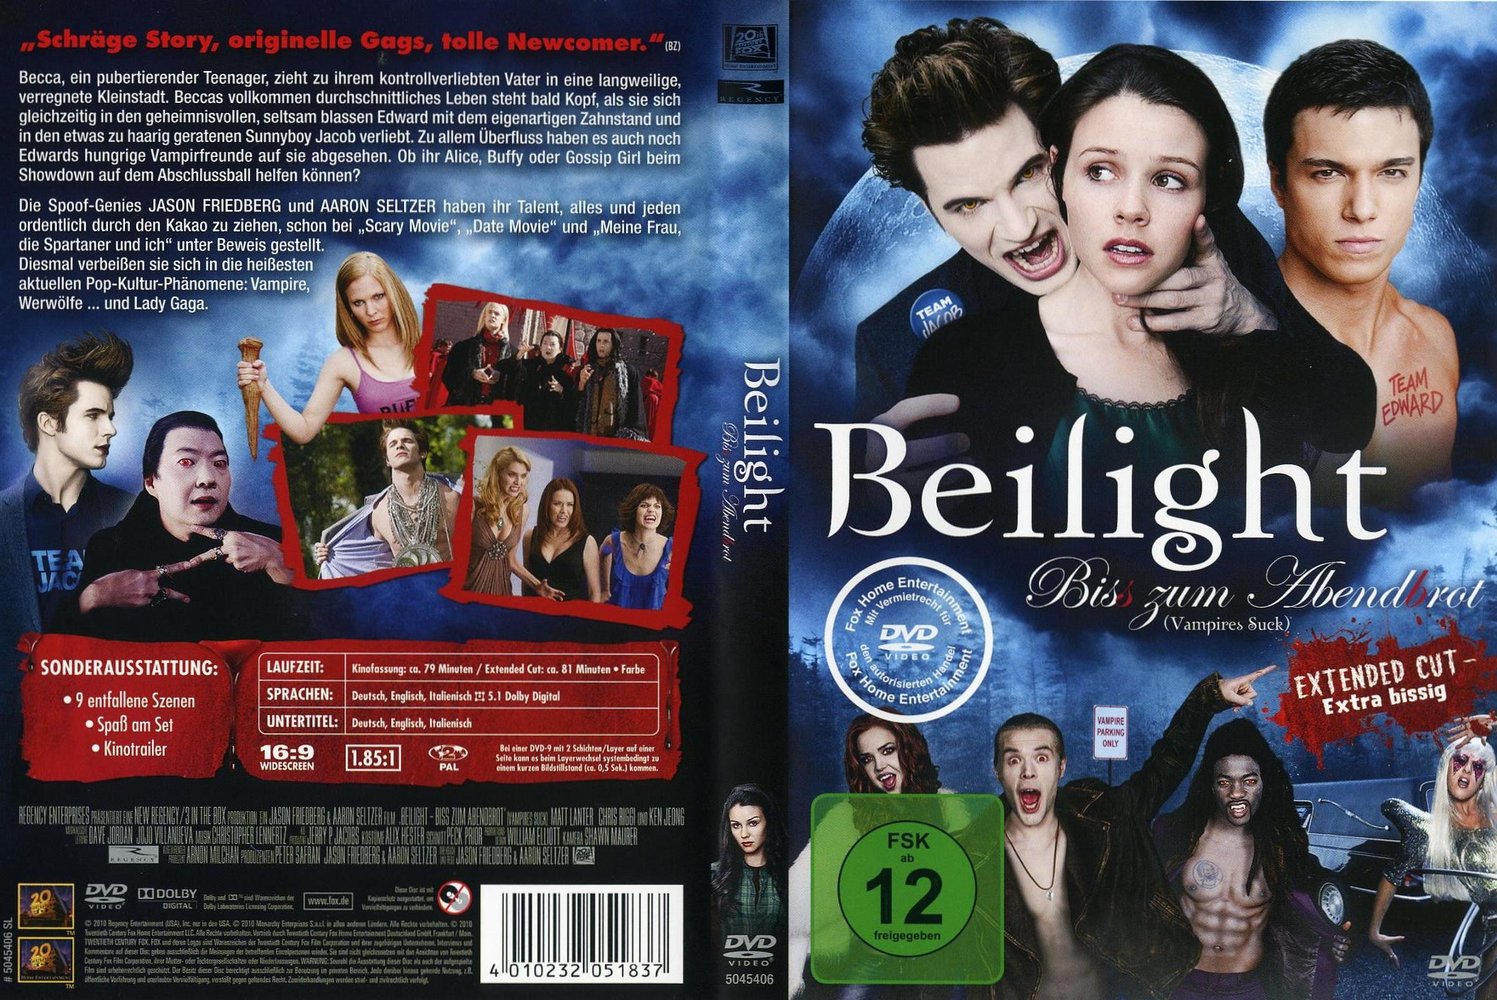 Beilight - Biss zum Abendbrot: DVD oder Blu-ray leihen - VIDEOBUSTER.de